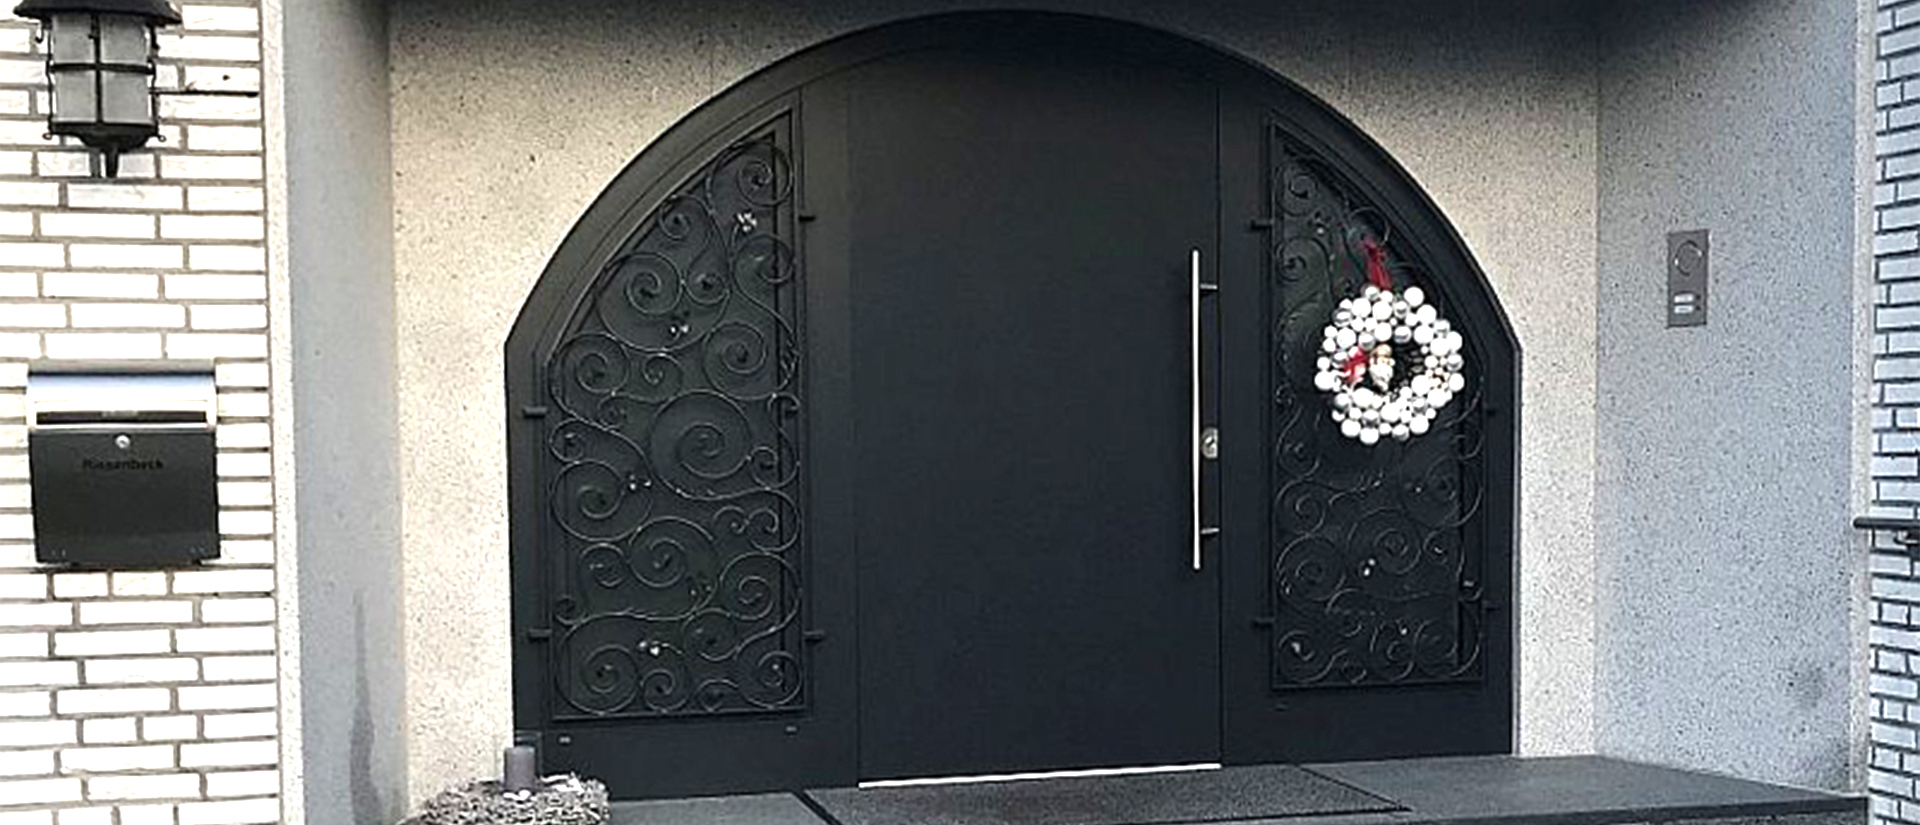 Herkenhoff Referenzen große schwarze Haustür mit Ornamenten